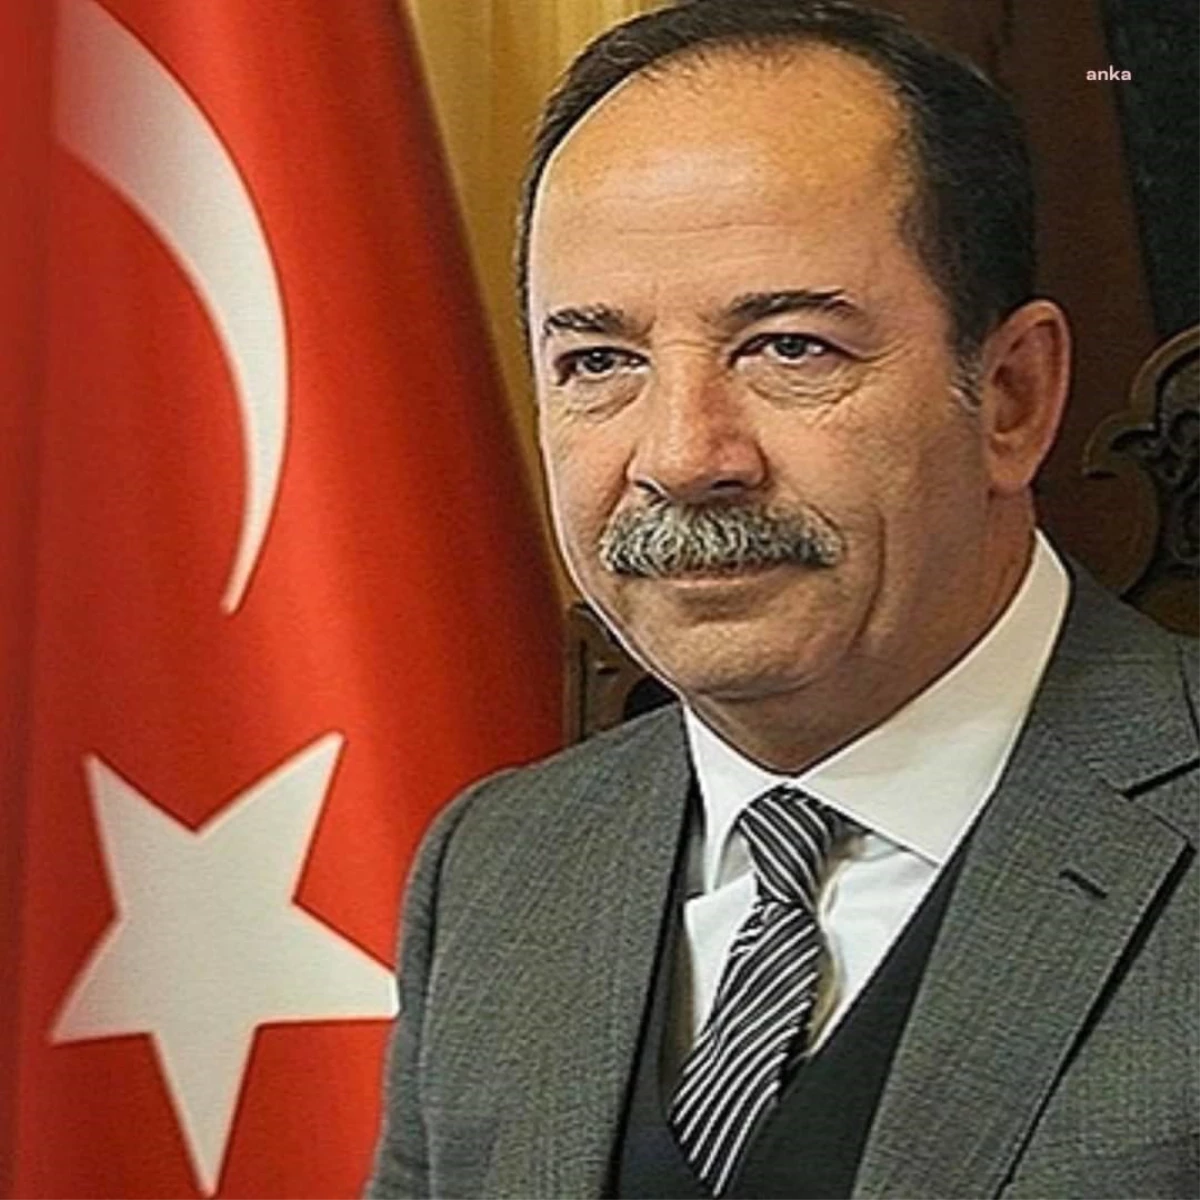 Eski Edirne Belediye Başkanı Recep Gürkan Şantaj ve Darp Davasından Beraat Etti